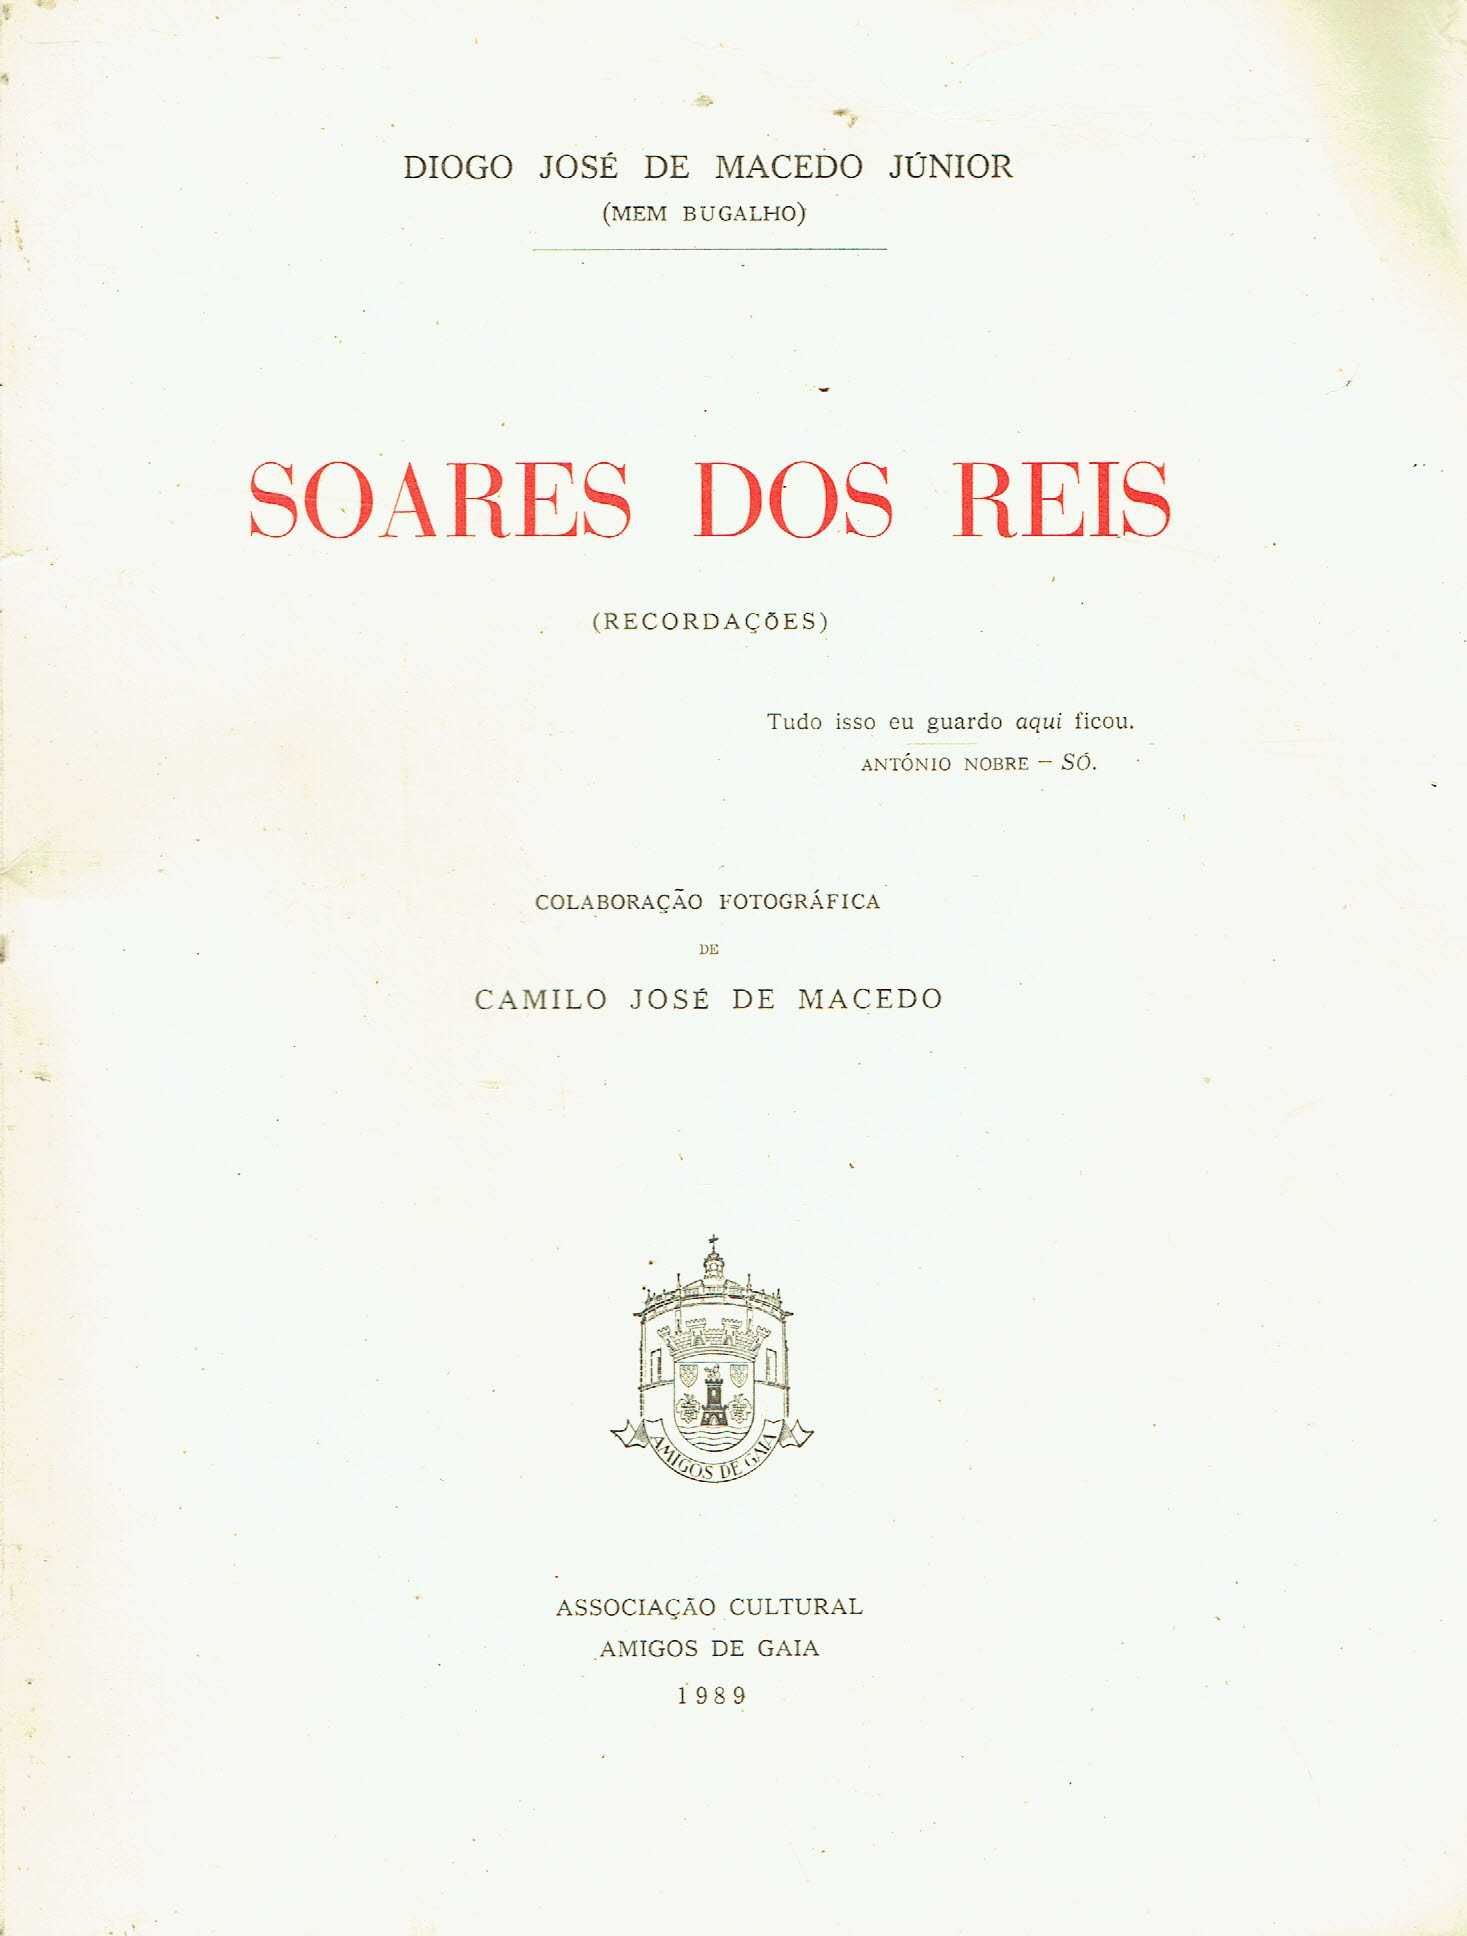 6723

	
Soares dos Reis : recordações  
de Diogo José de Macedo Júnior